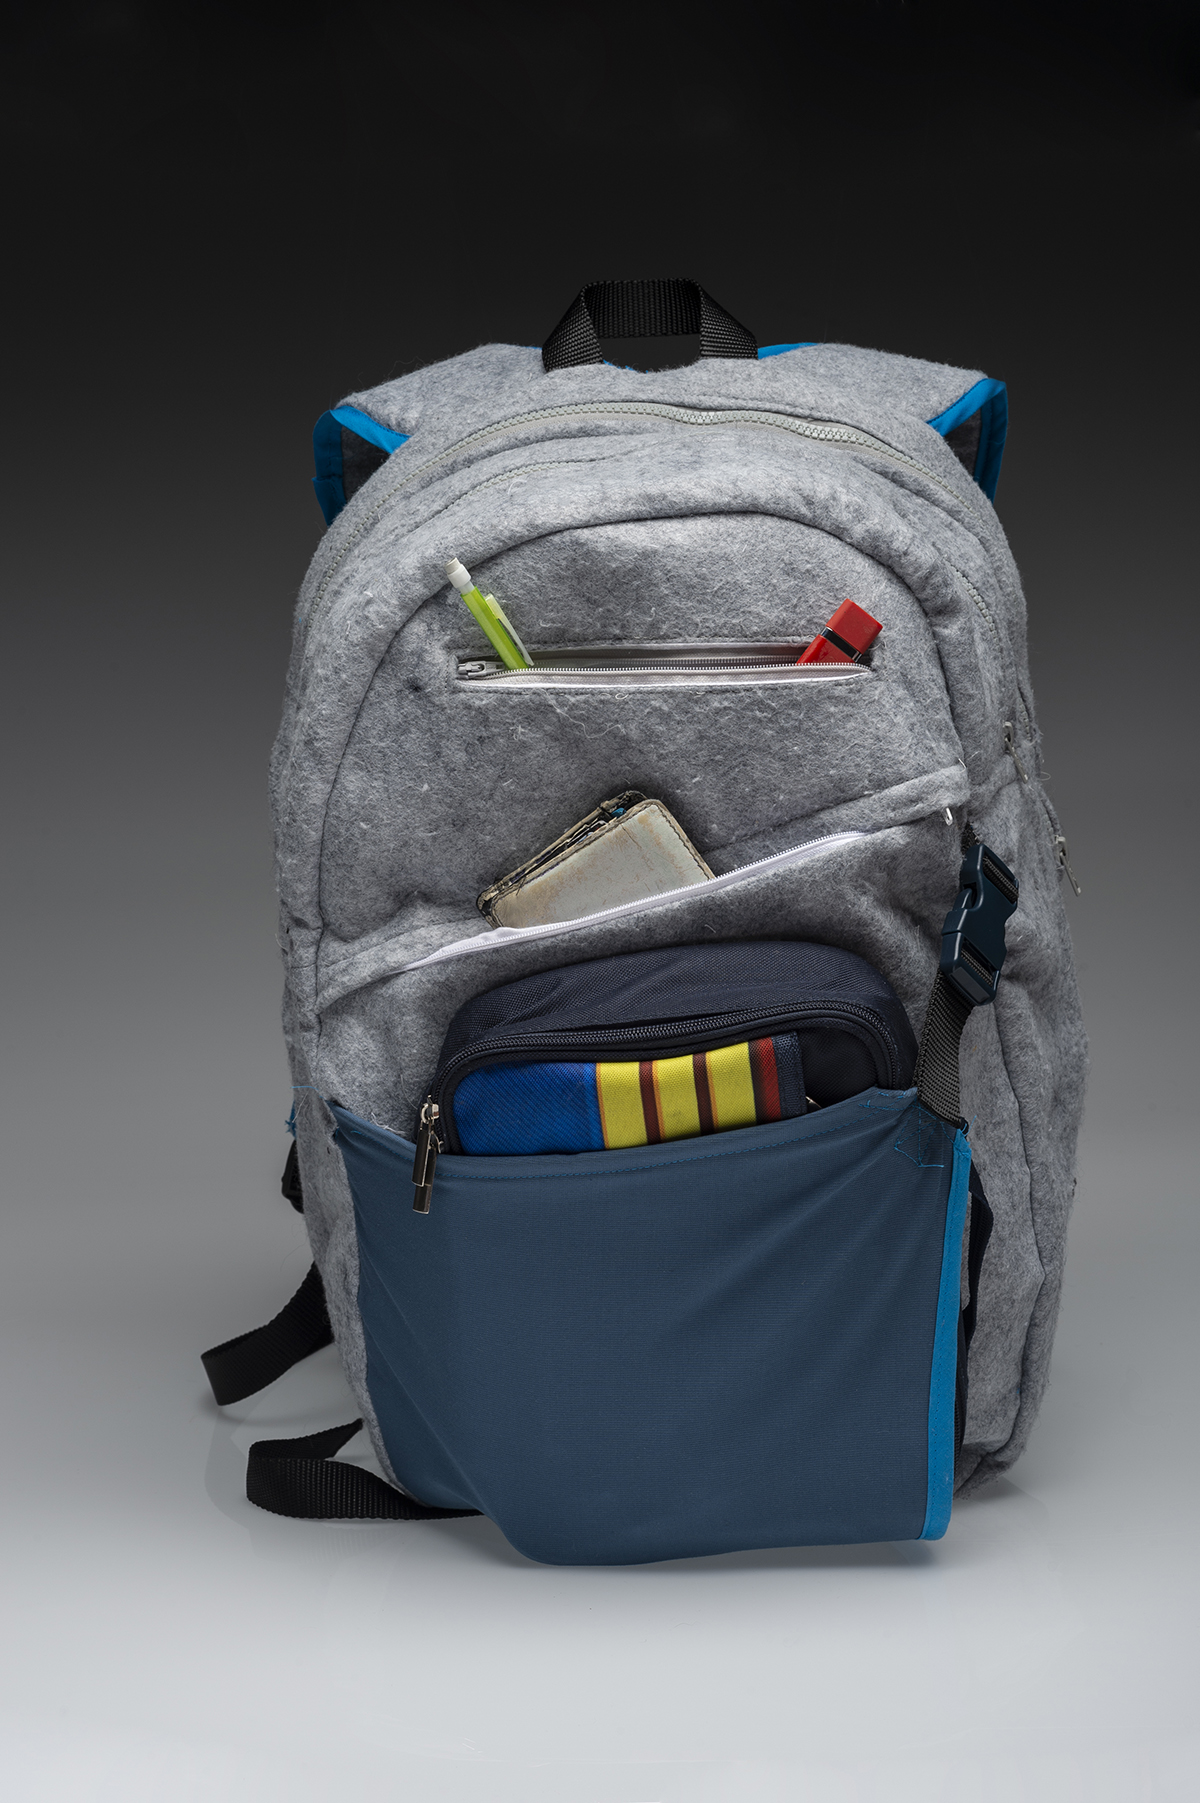 A grey and blue bag design.